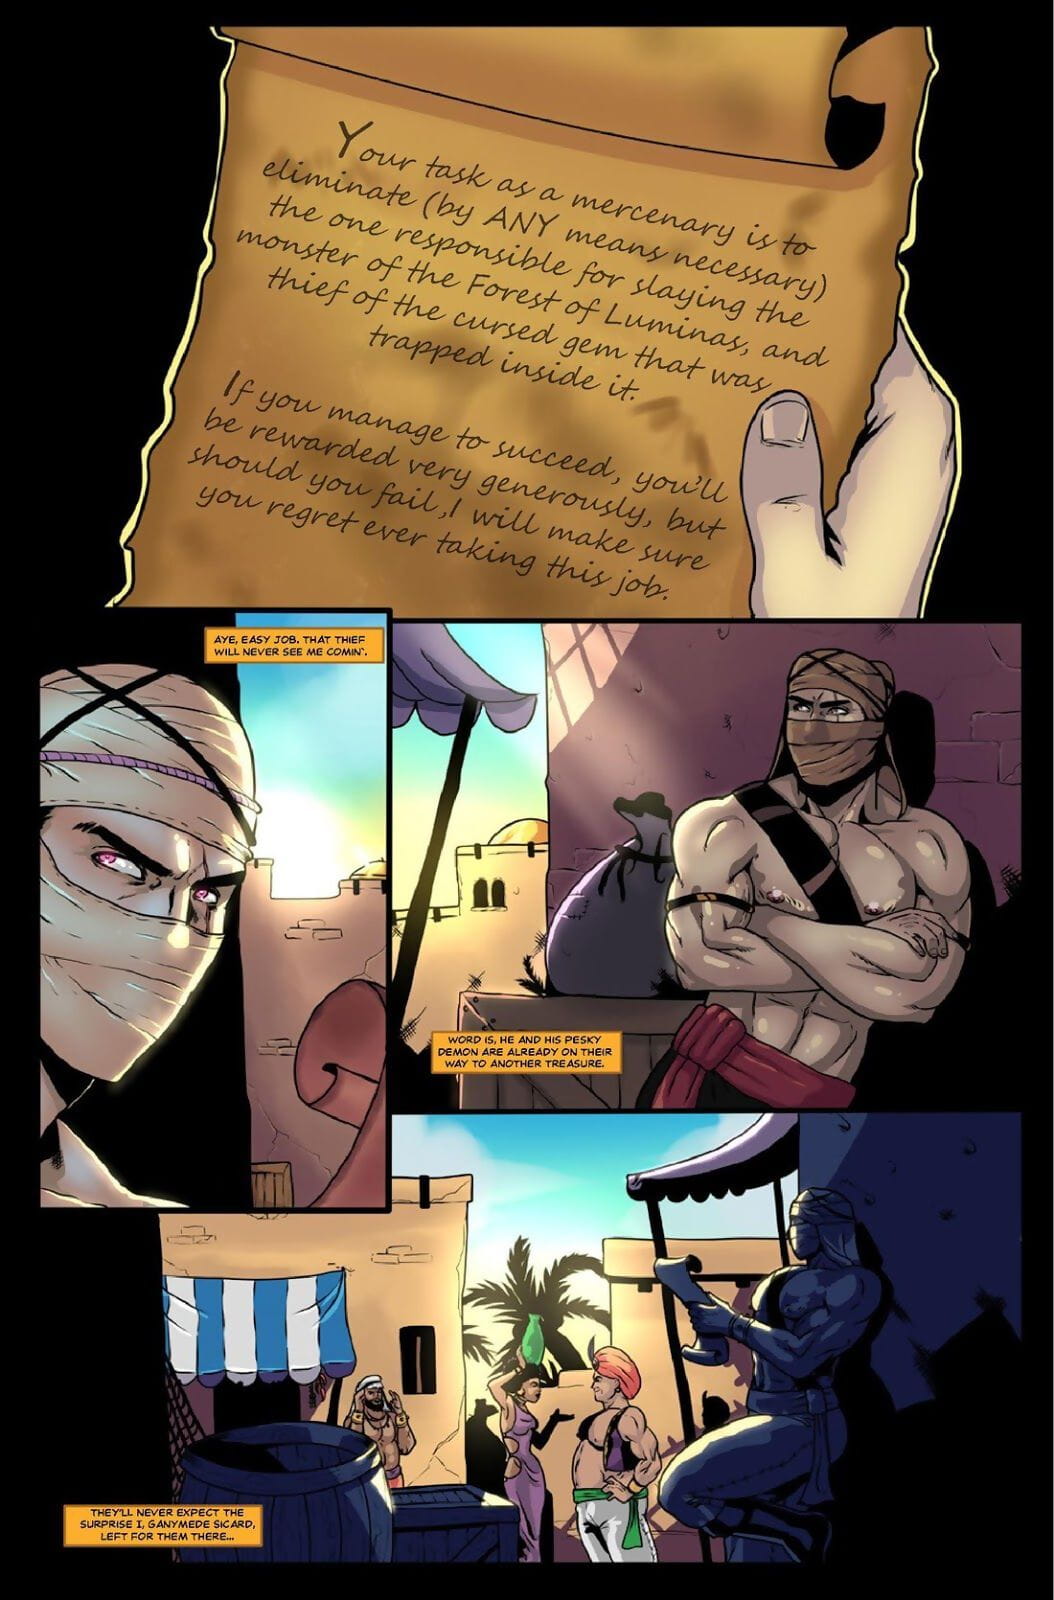 汤姆 克雷 乔克斯 – 宝 猎人 #3 page 1